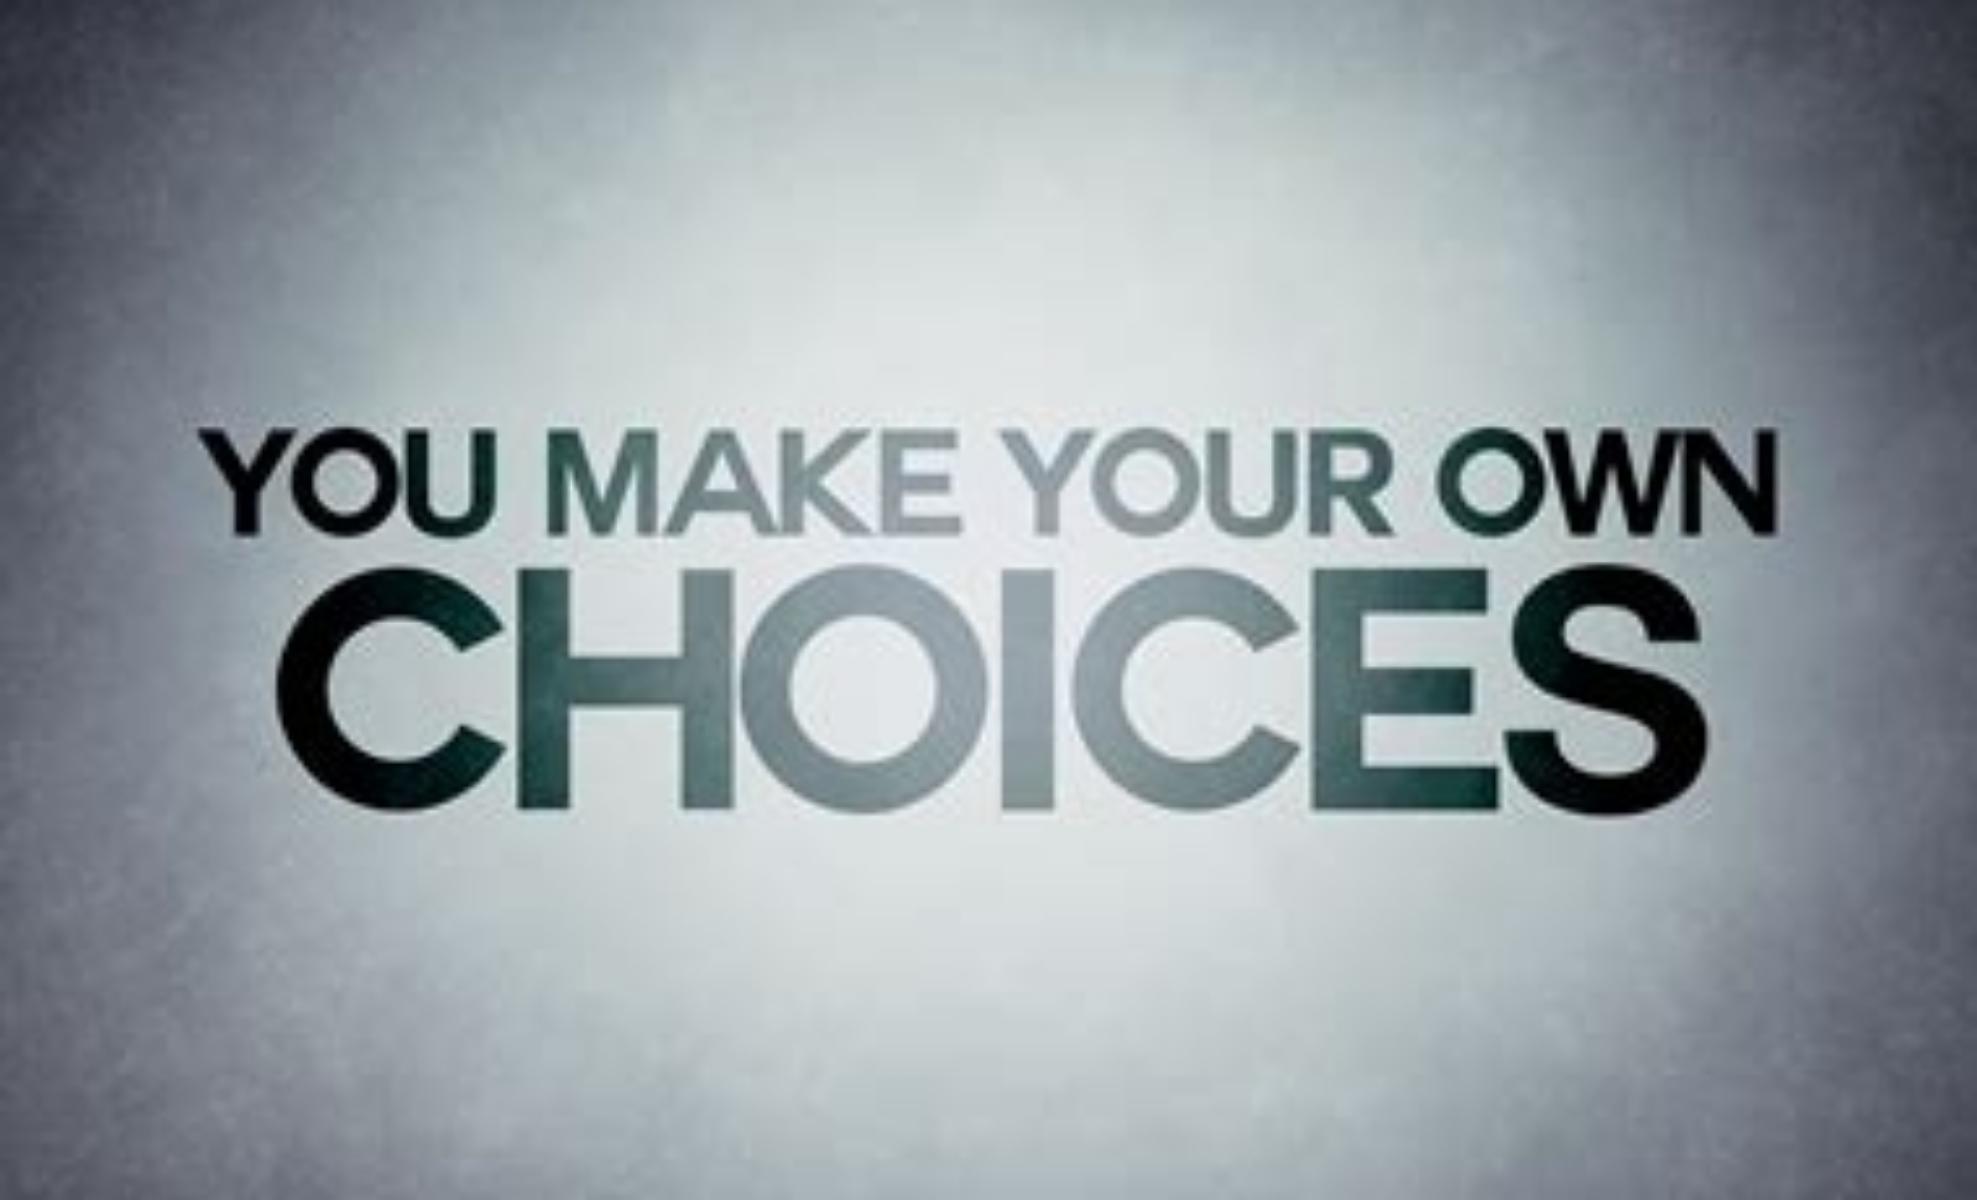 I Choose, If....